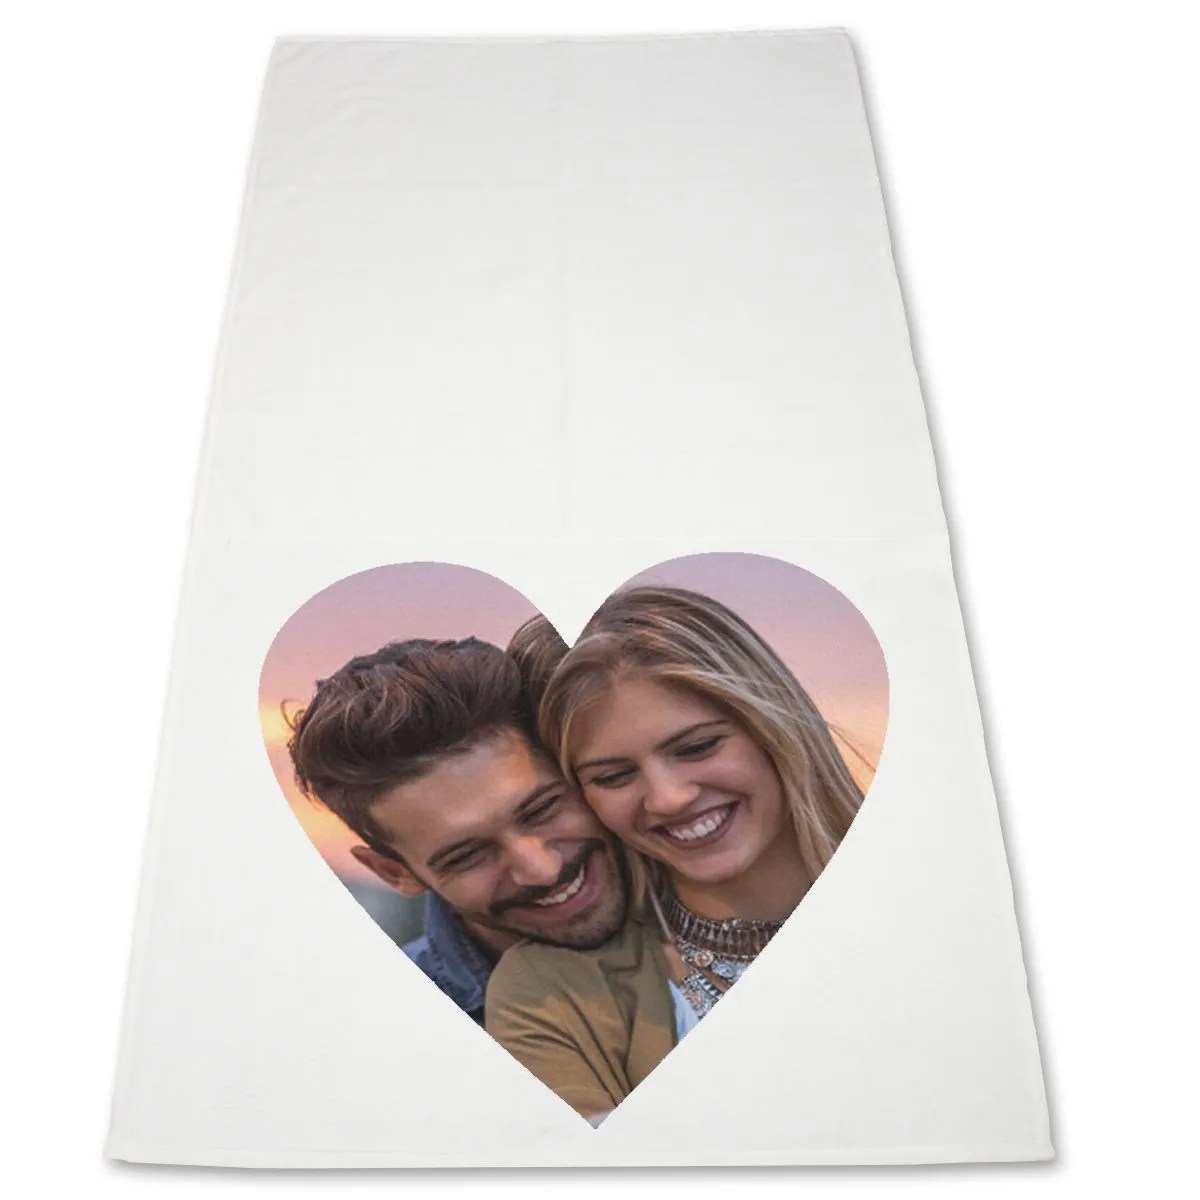 Handtuch mit Fotodruck in Herzform - 70x140 cm